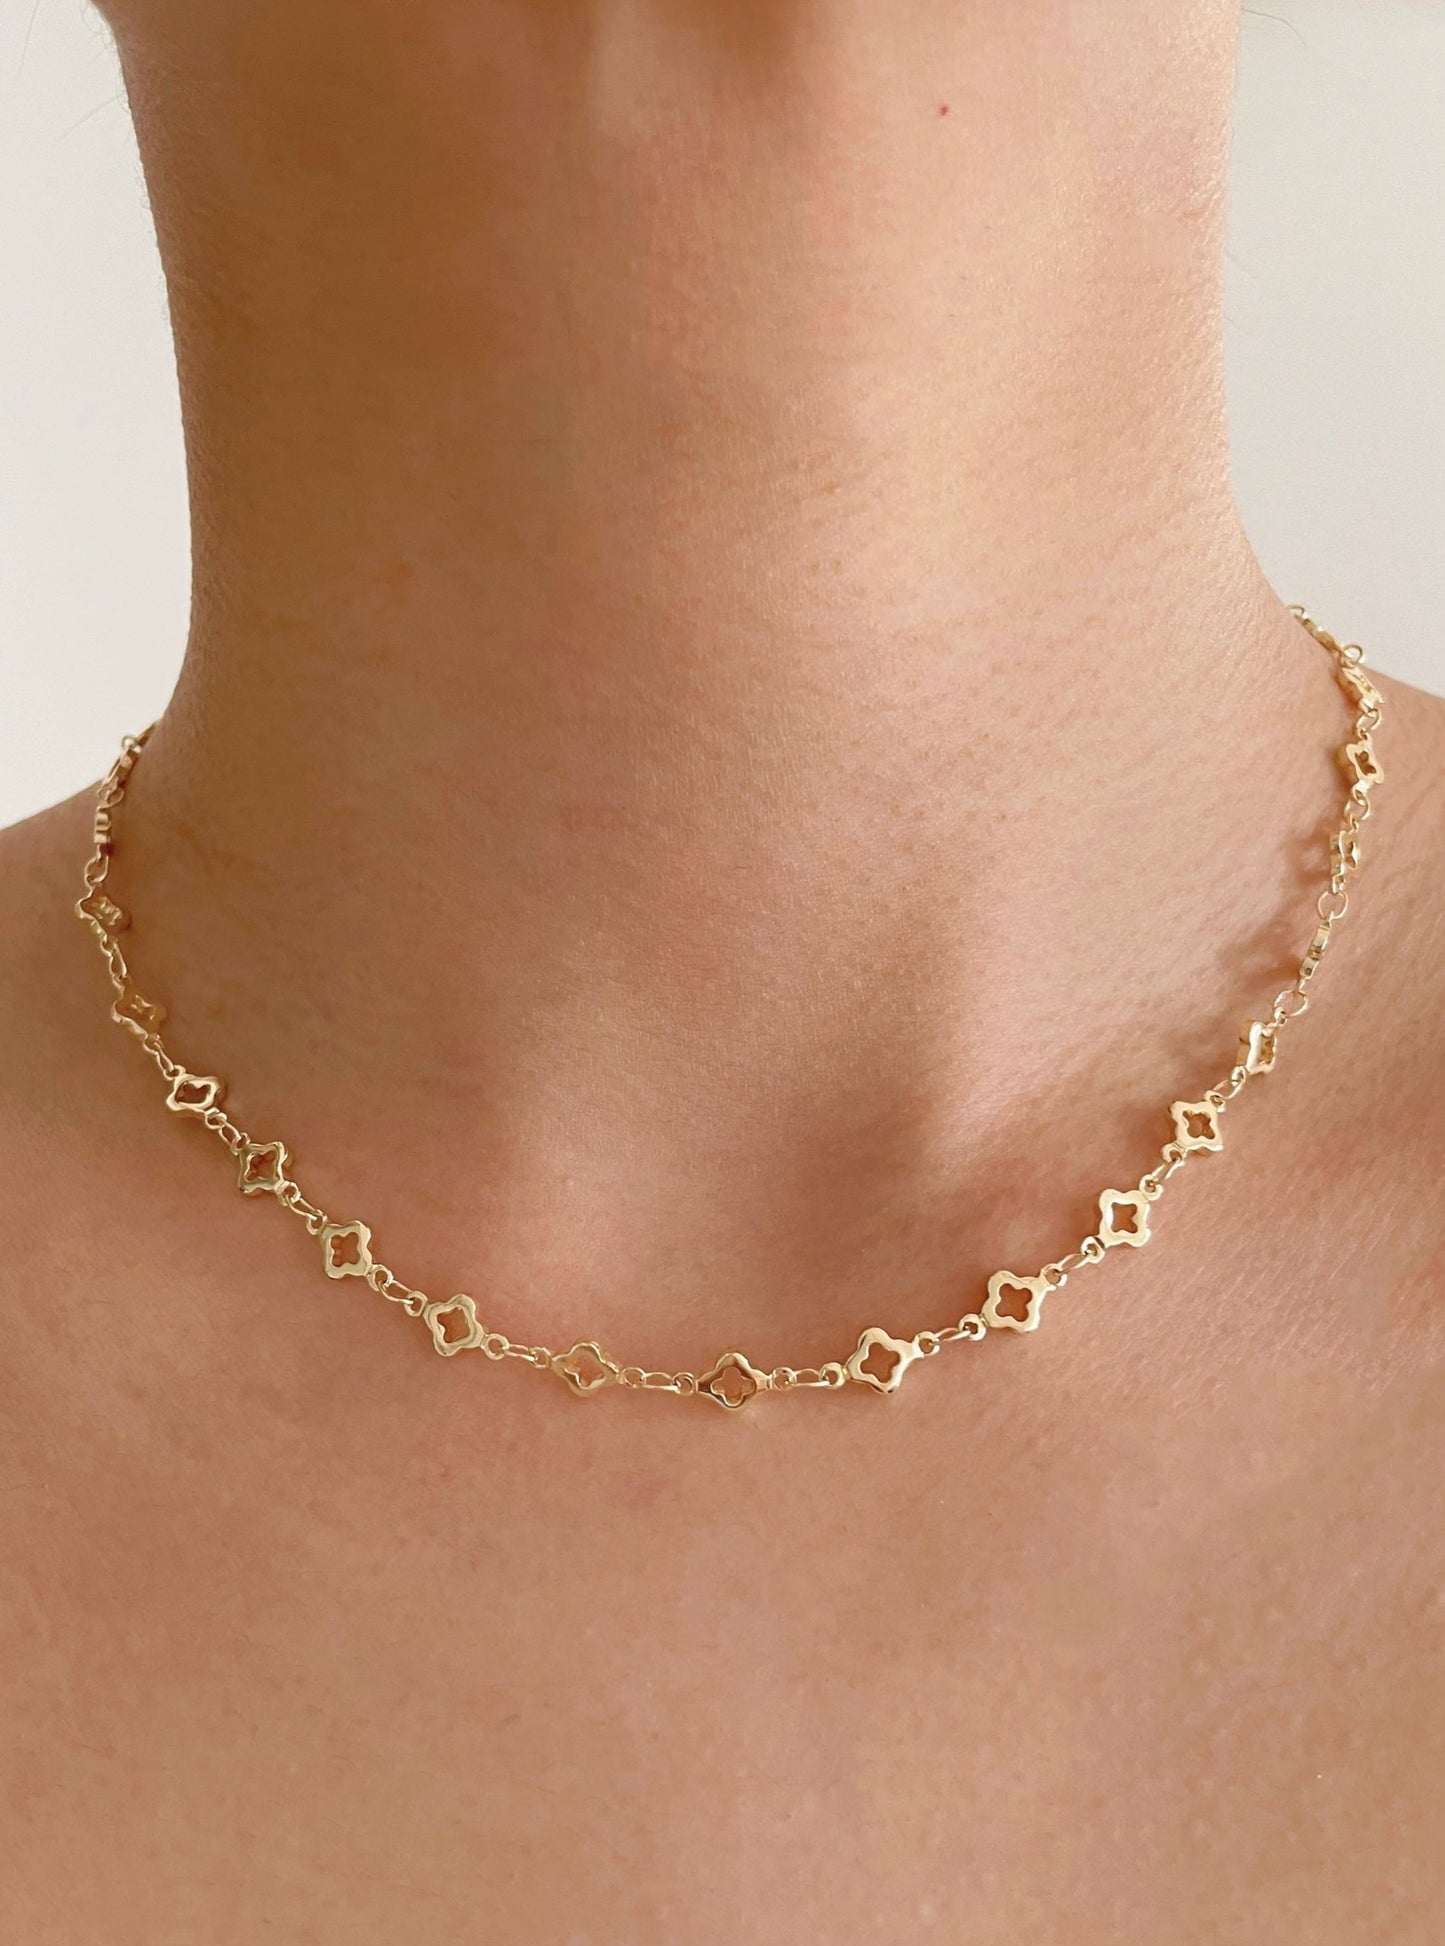 14k Gold Filled Clover Necklace